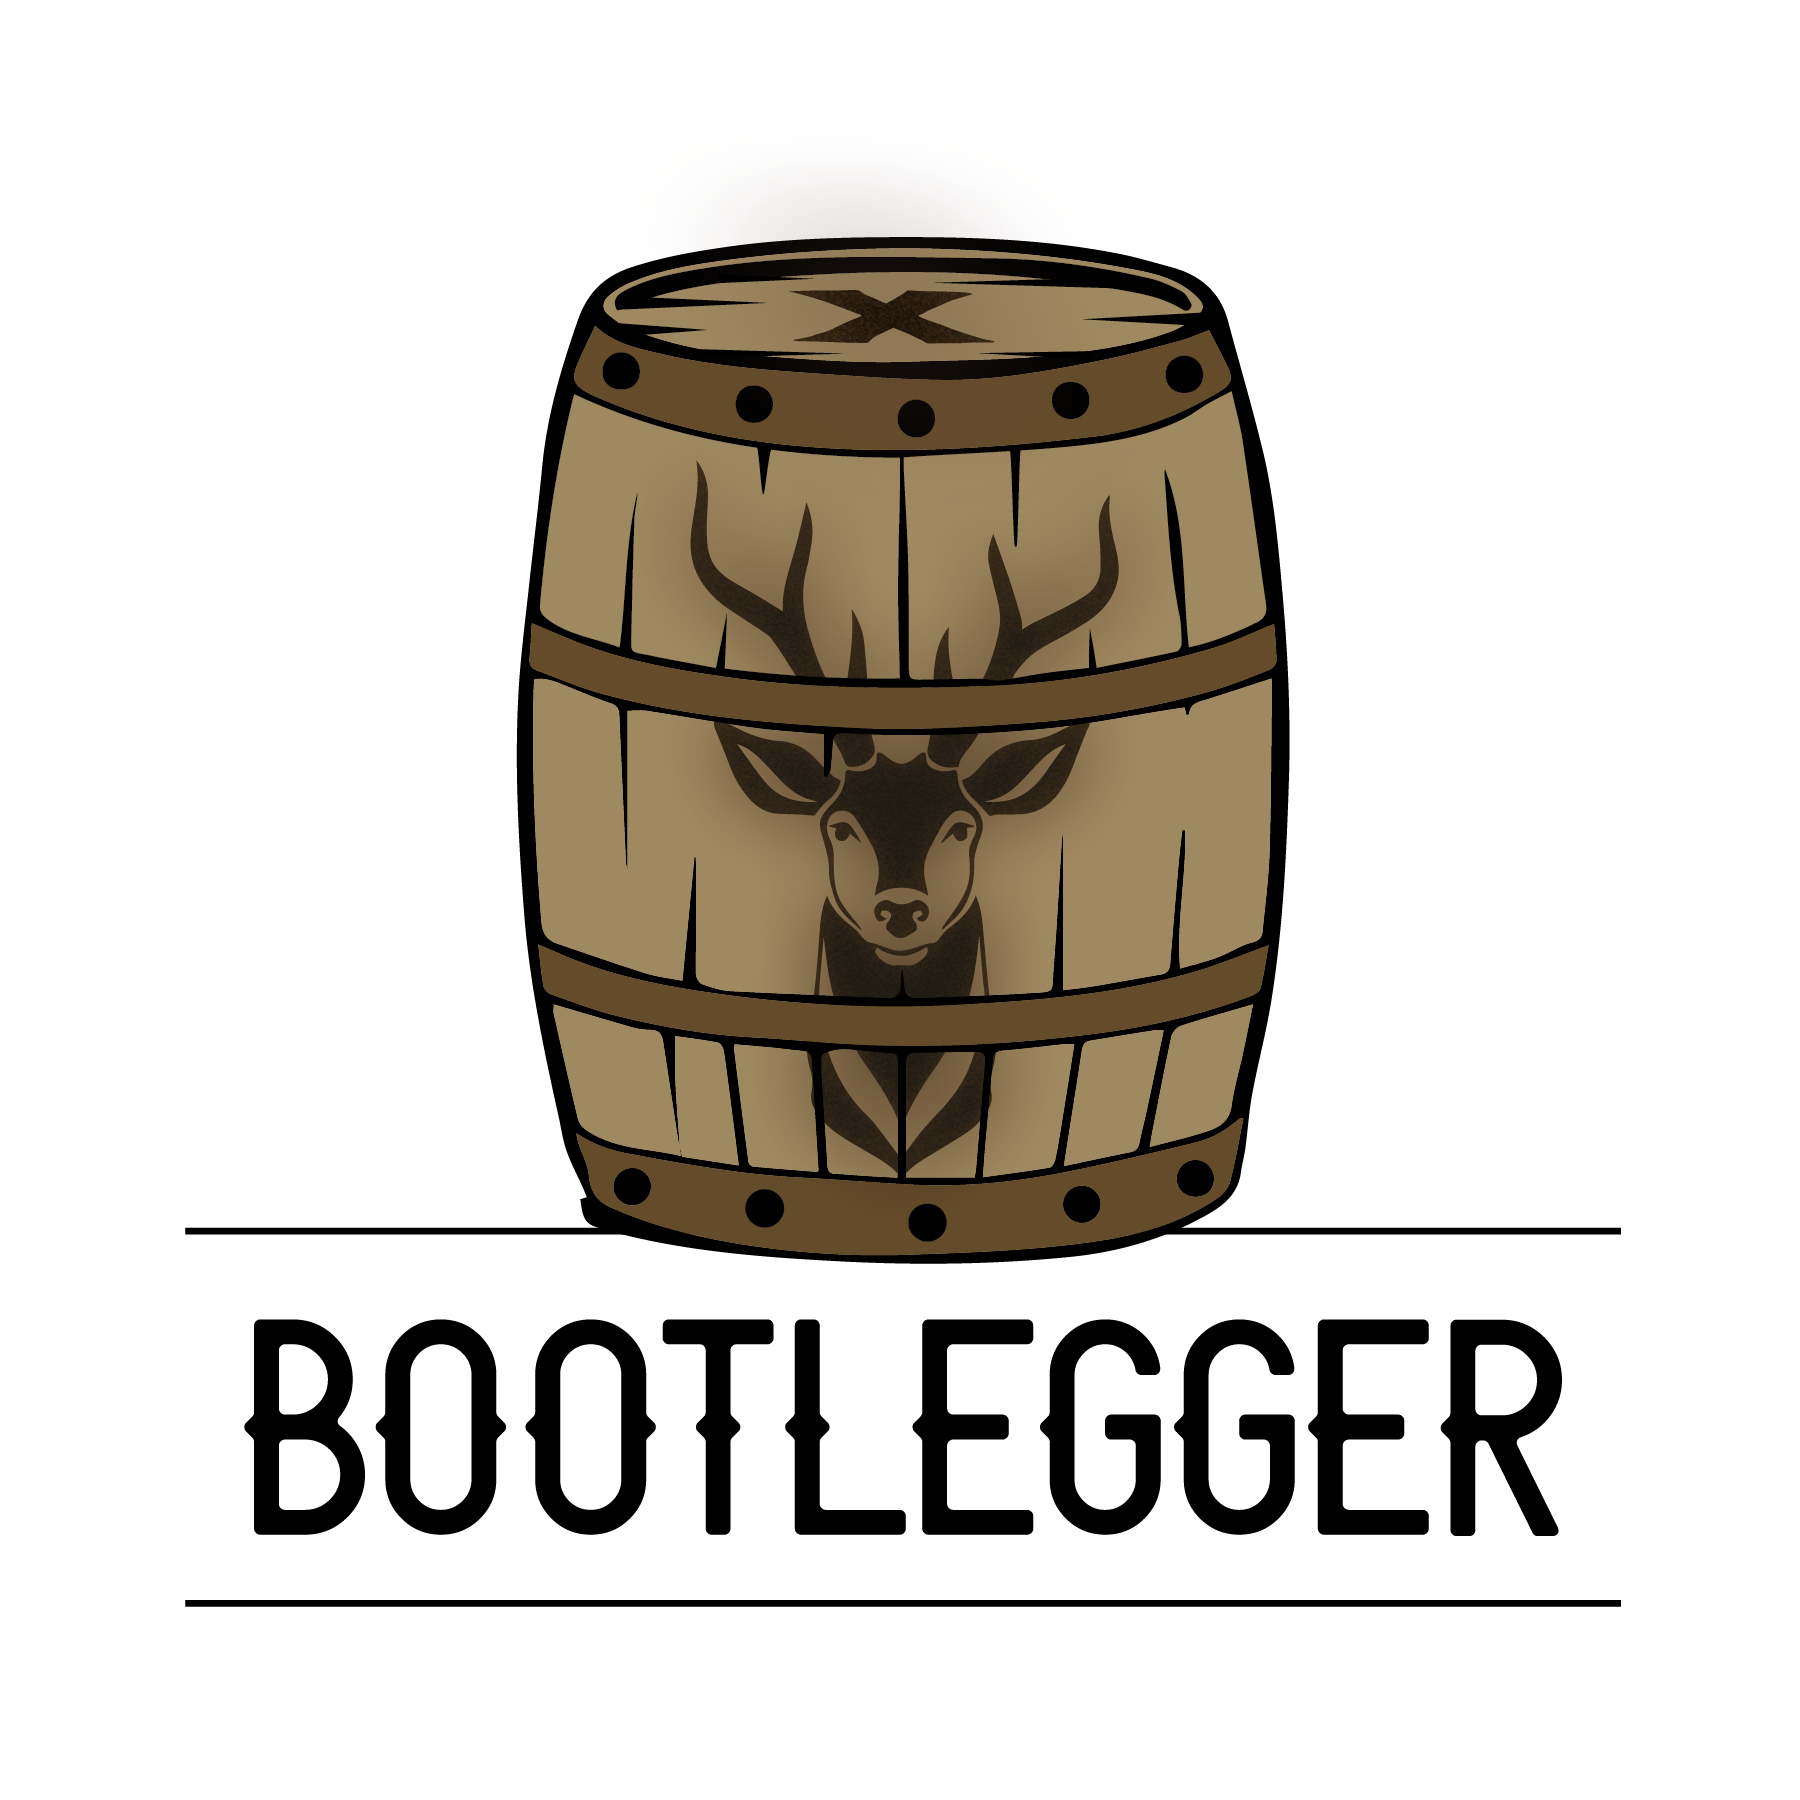 Bootlegger Logo development final all formats